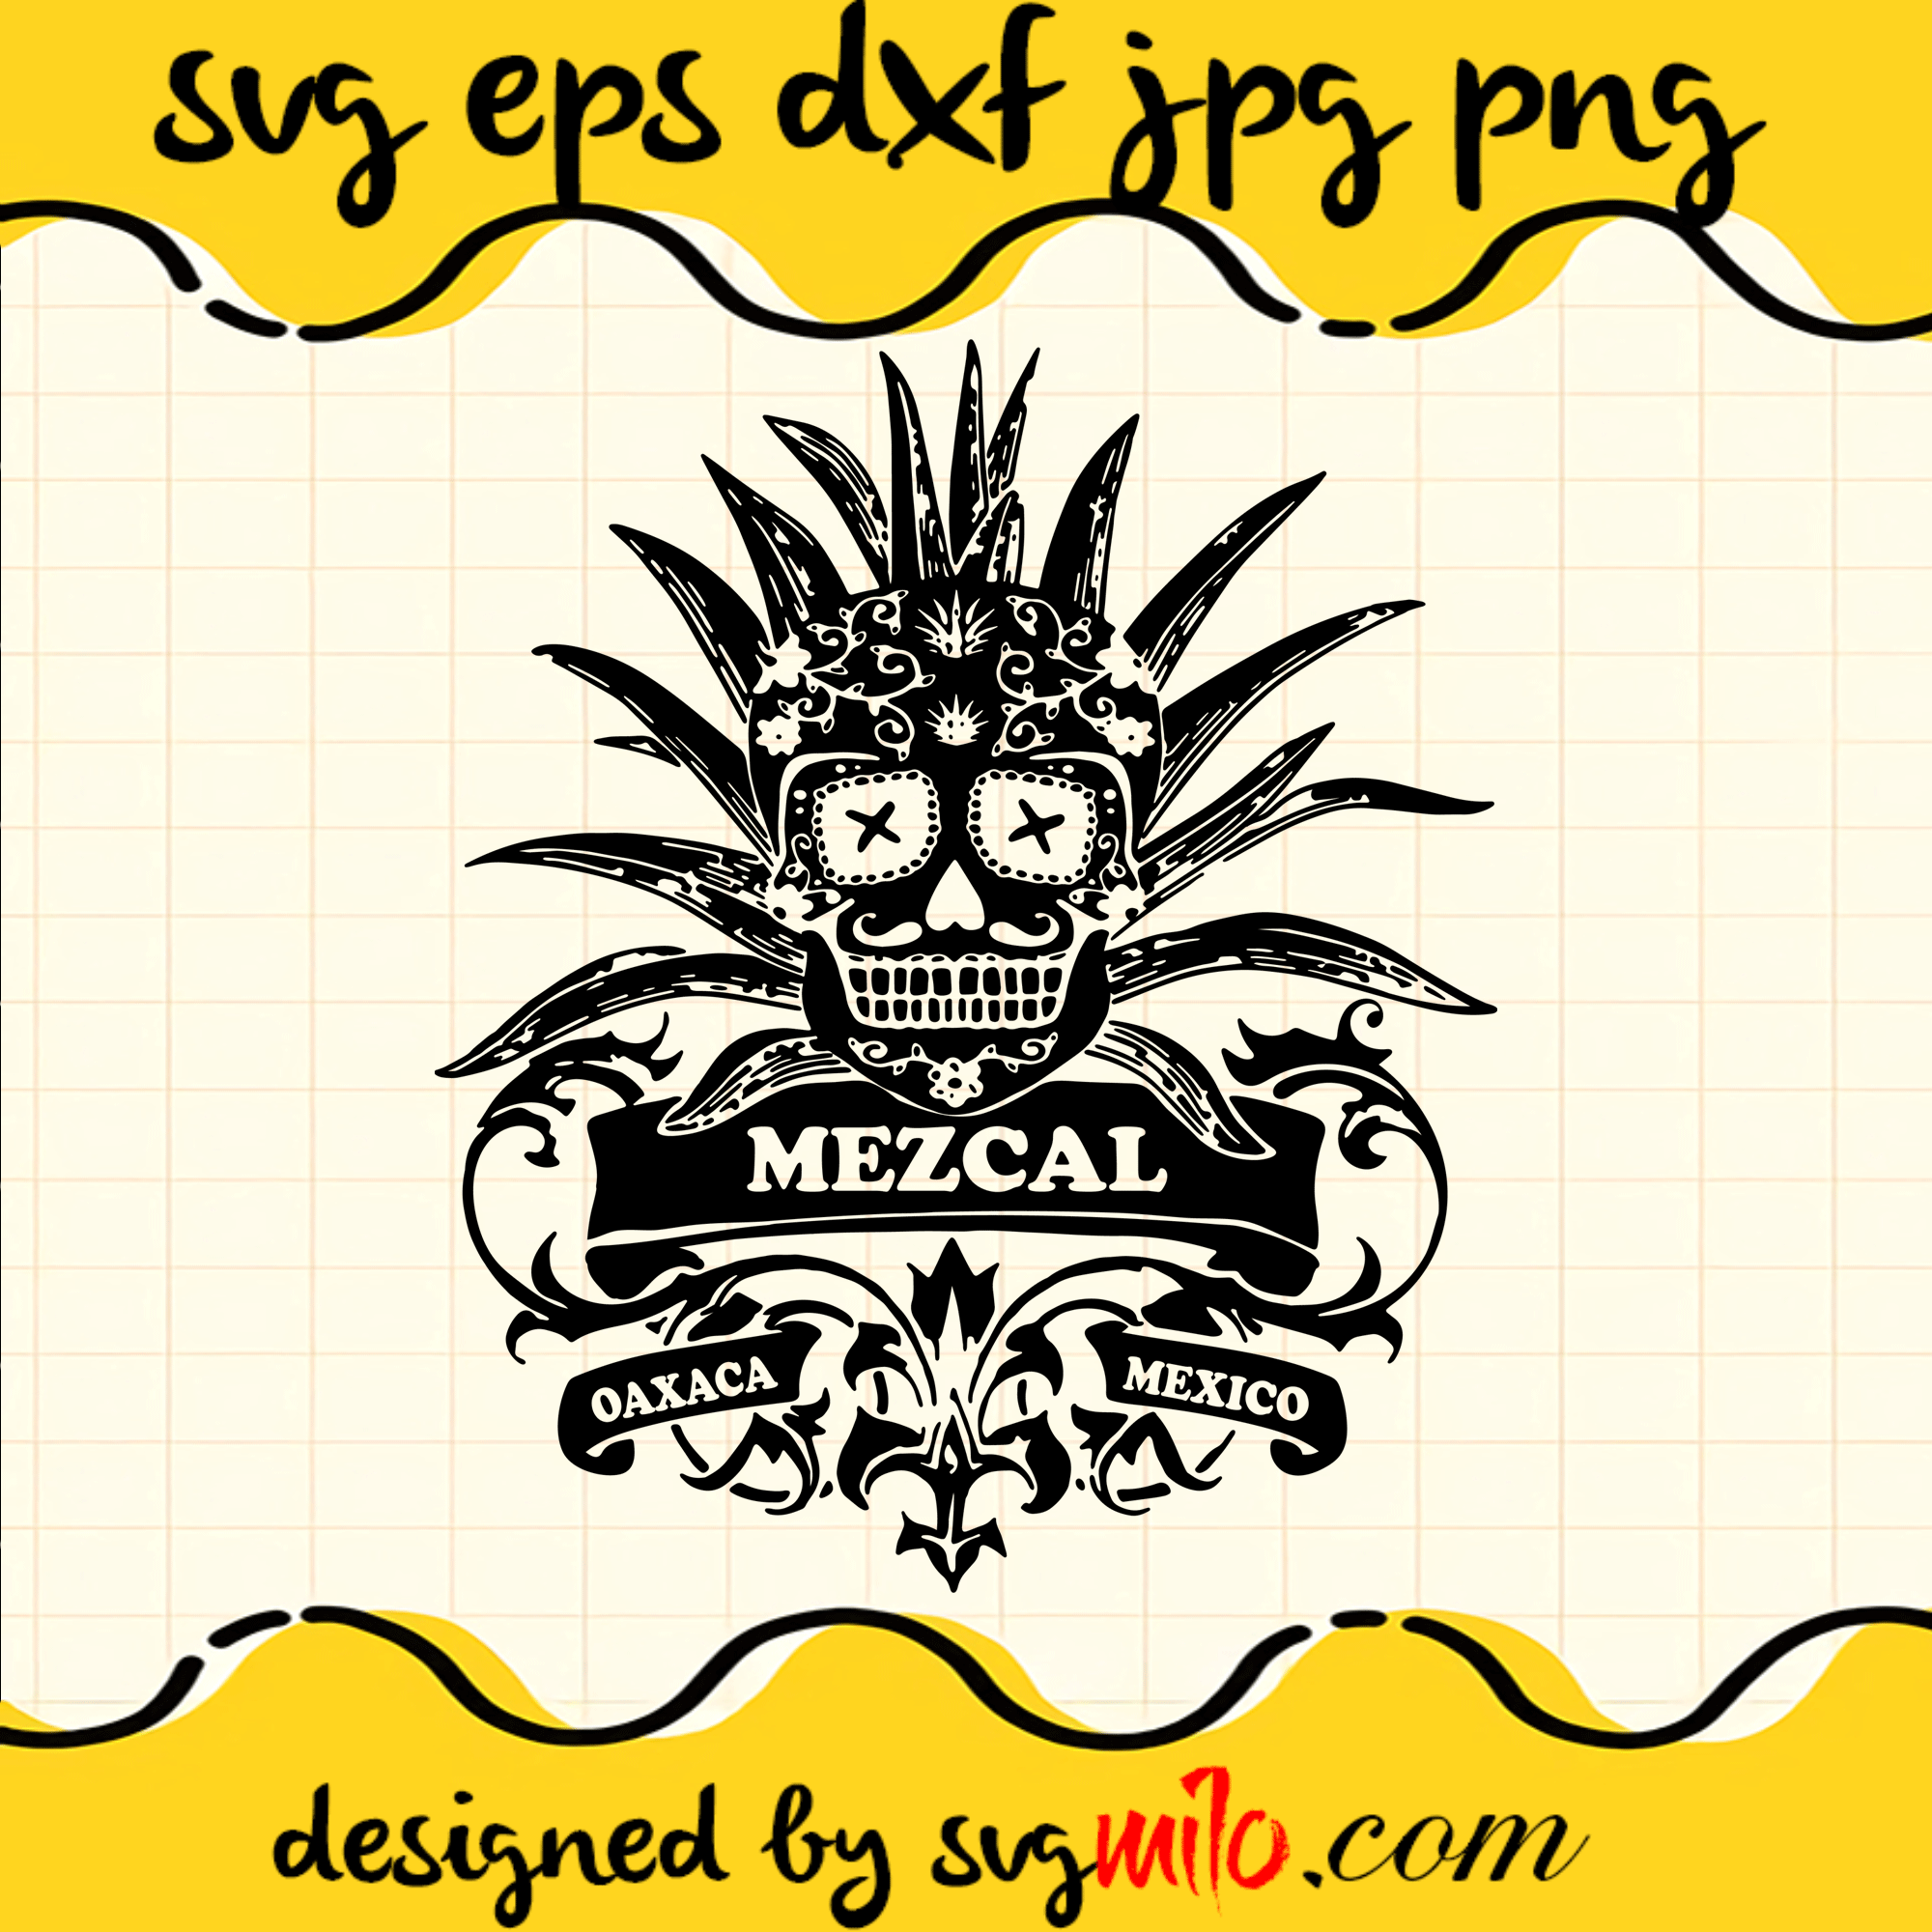 Mezcal SVG, Vintage Tequila SVG, Sugar Skull Graphic SVG, Halloween SVG, EPS, PNG, DXF, Premium Quality - SVGMILO